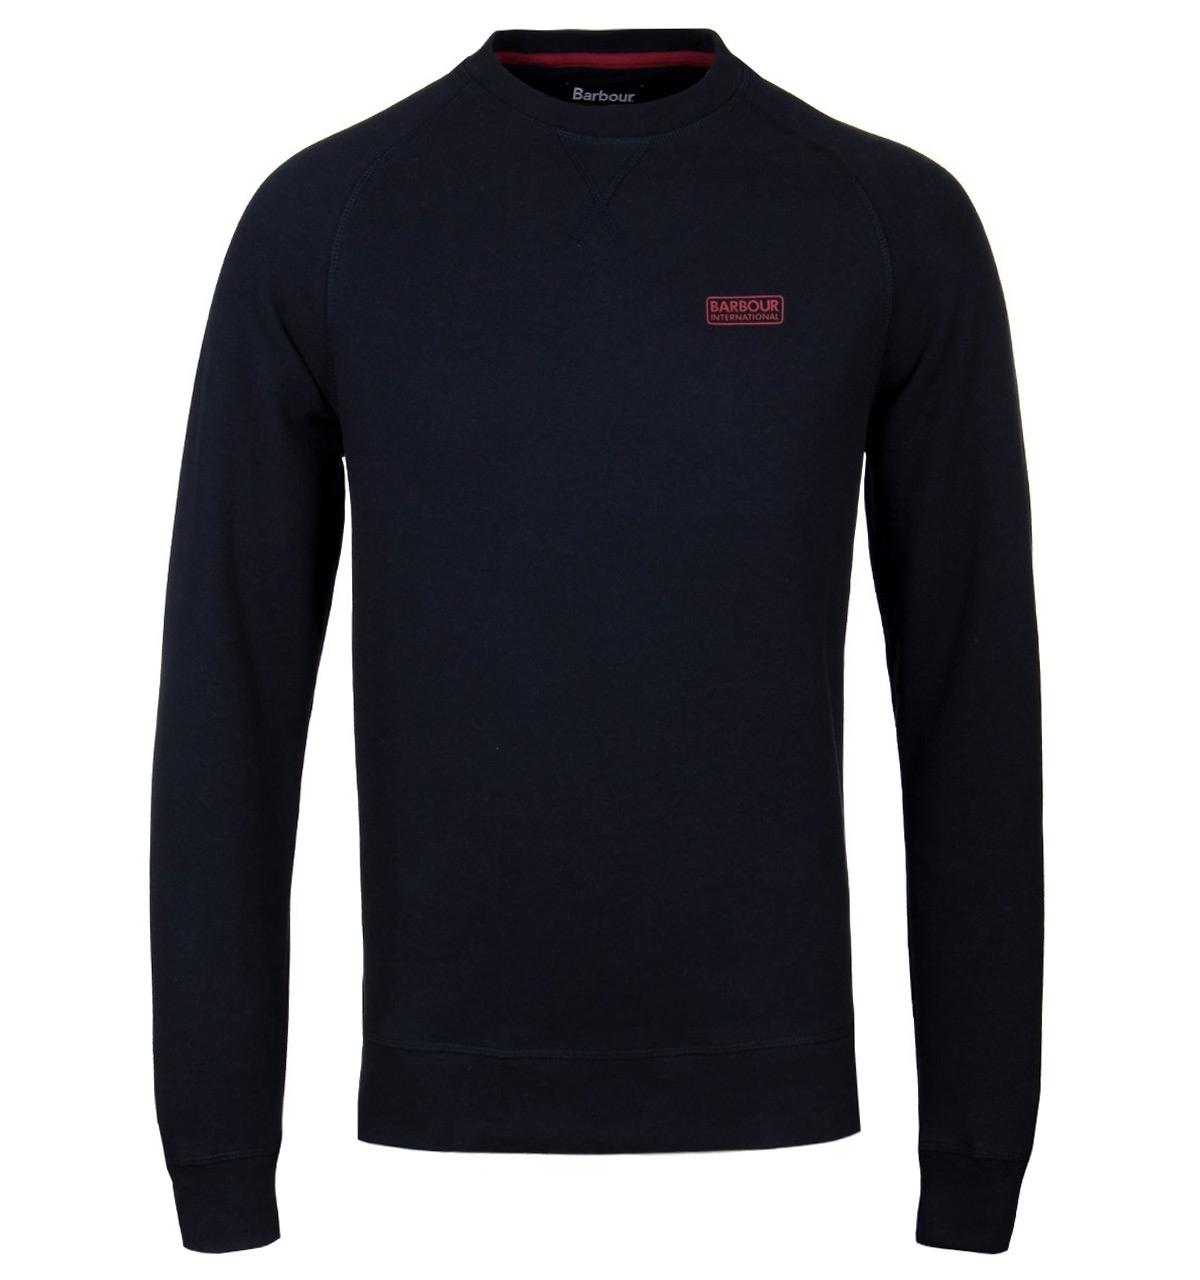 Lyst - Barbour Navy Essential Crew Neck Sweatshirt in Blue for Men